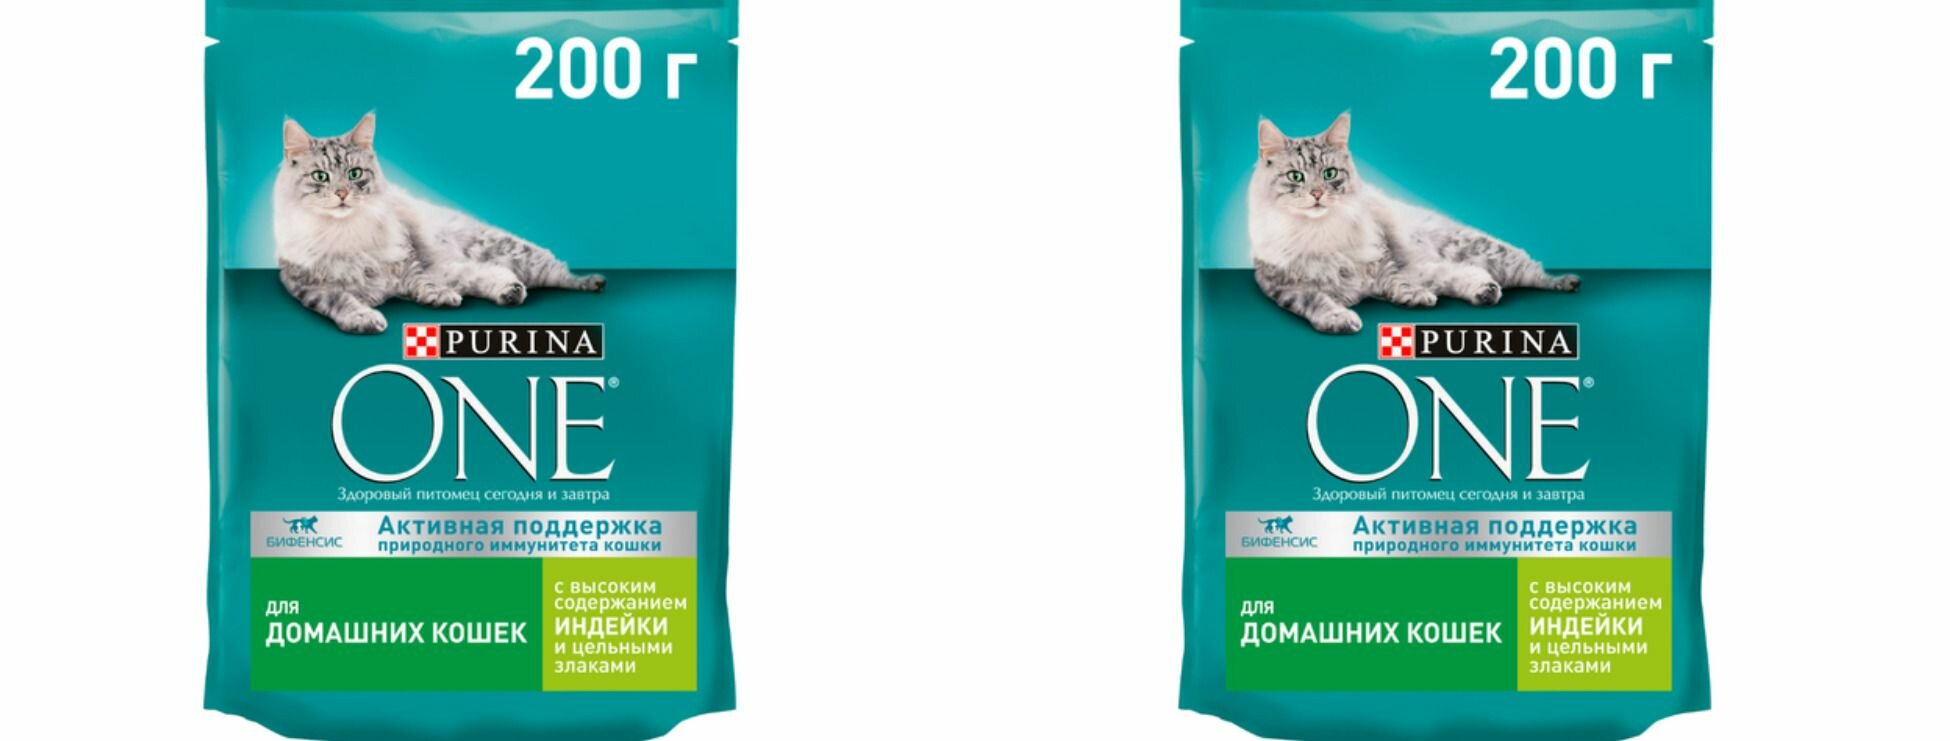 Purina One сухой корм для взрослых кошек, с высоким содержанием индейки и цельными злаками, 200 г, 2 шт